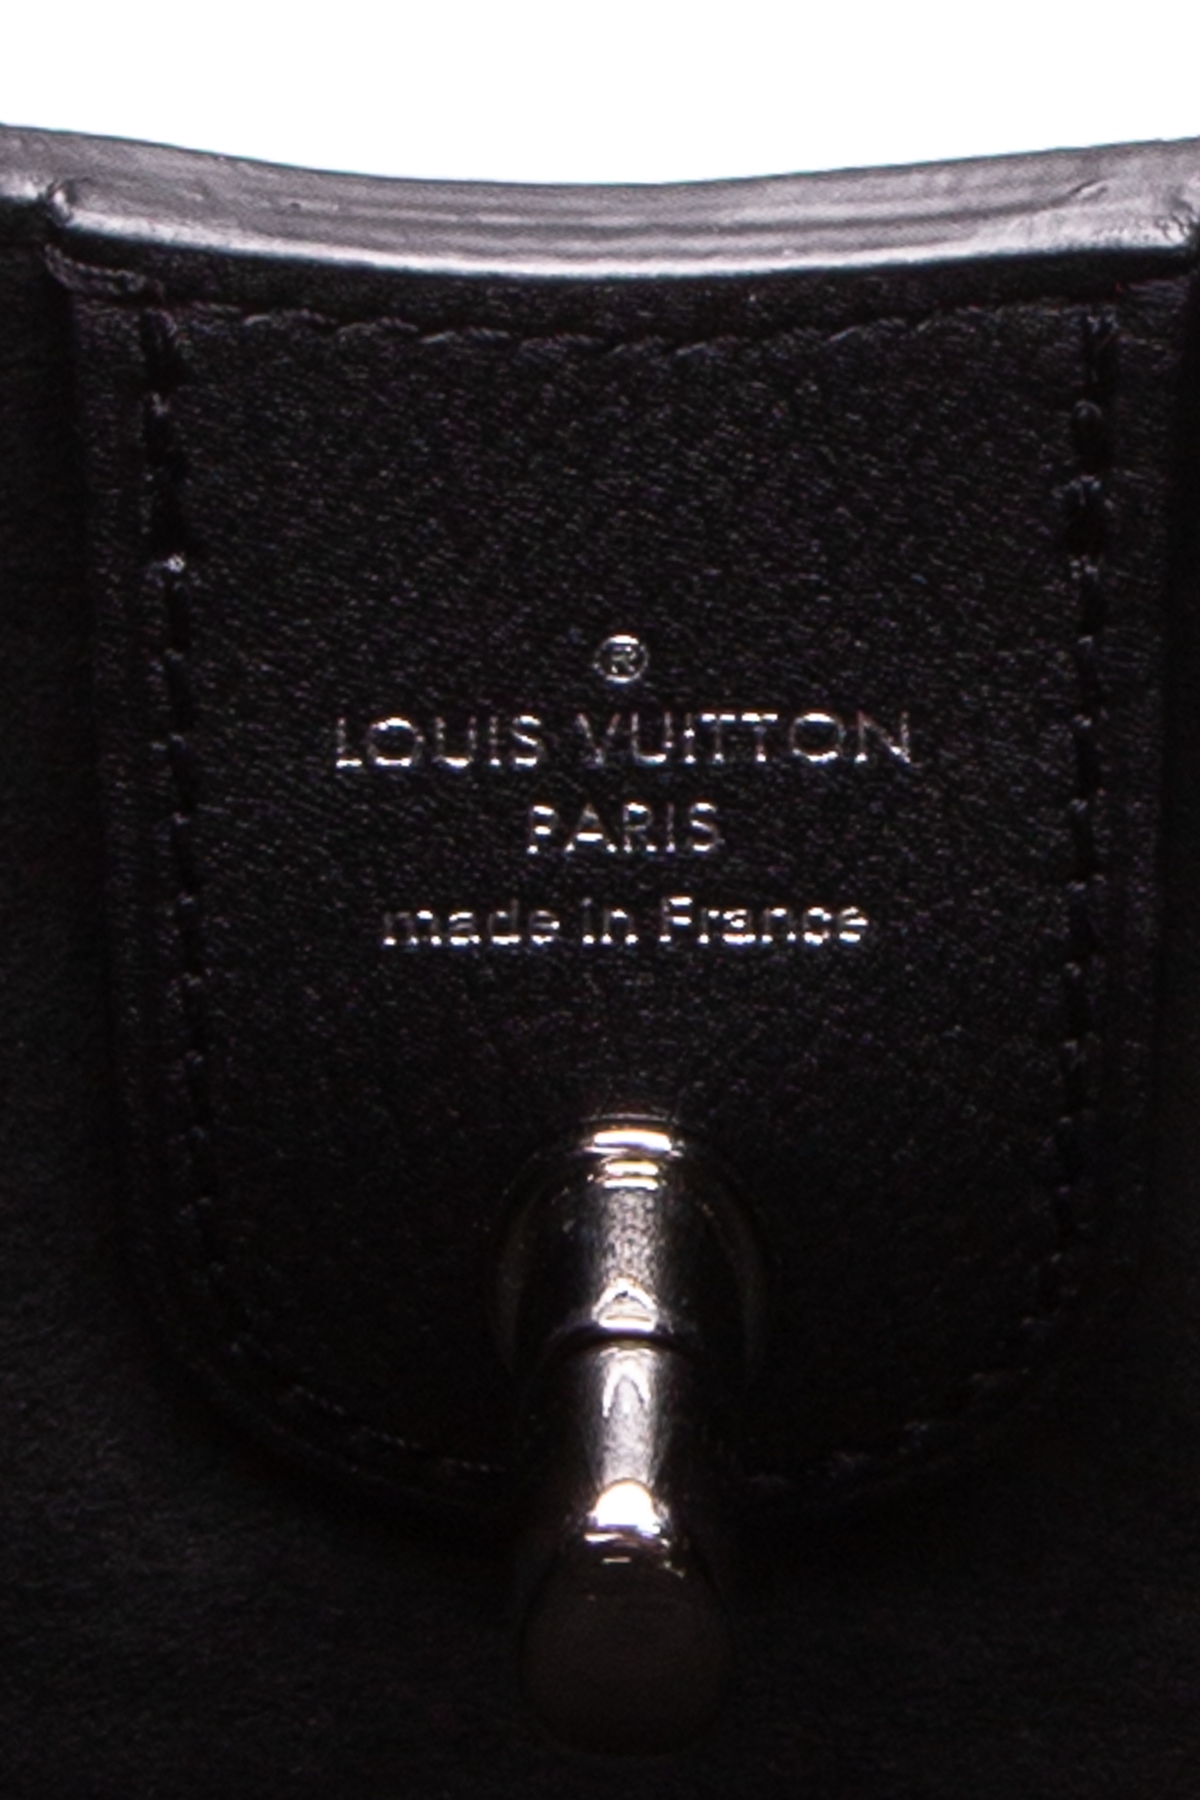 Louis Vuitton Lockme Hobo Bag